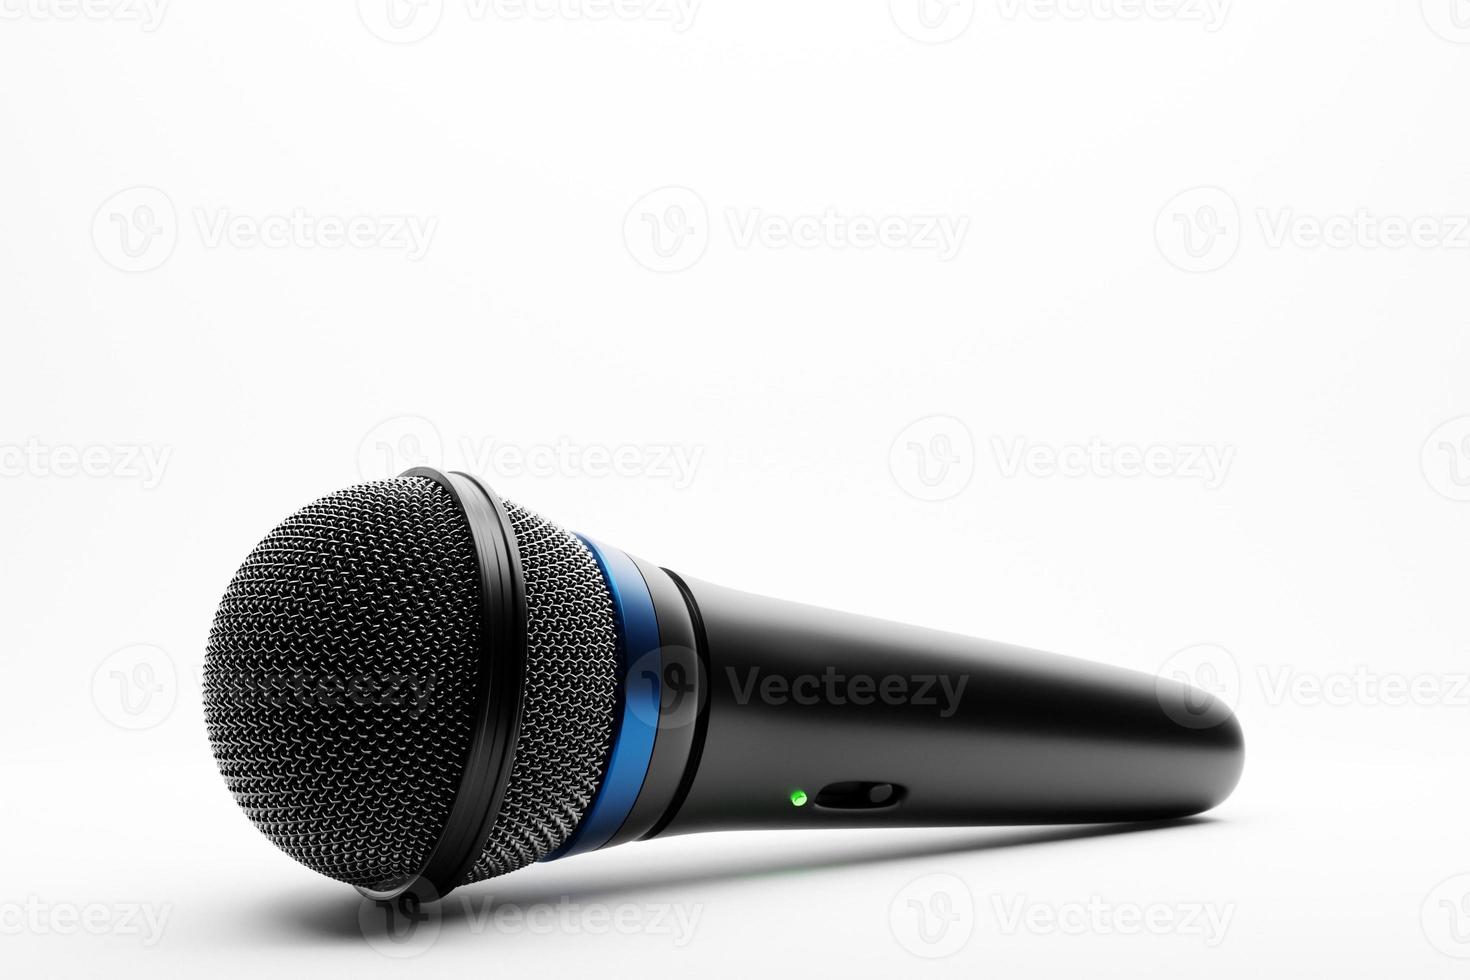 microfone, modelo de forma redonda, ilustração 3d realista. prêmio de música, karaokê, rádio e equipamentos de som de estúdio de gravação foto